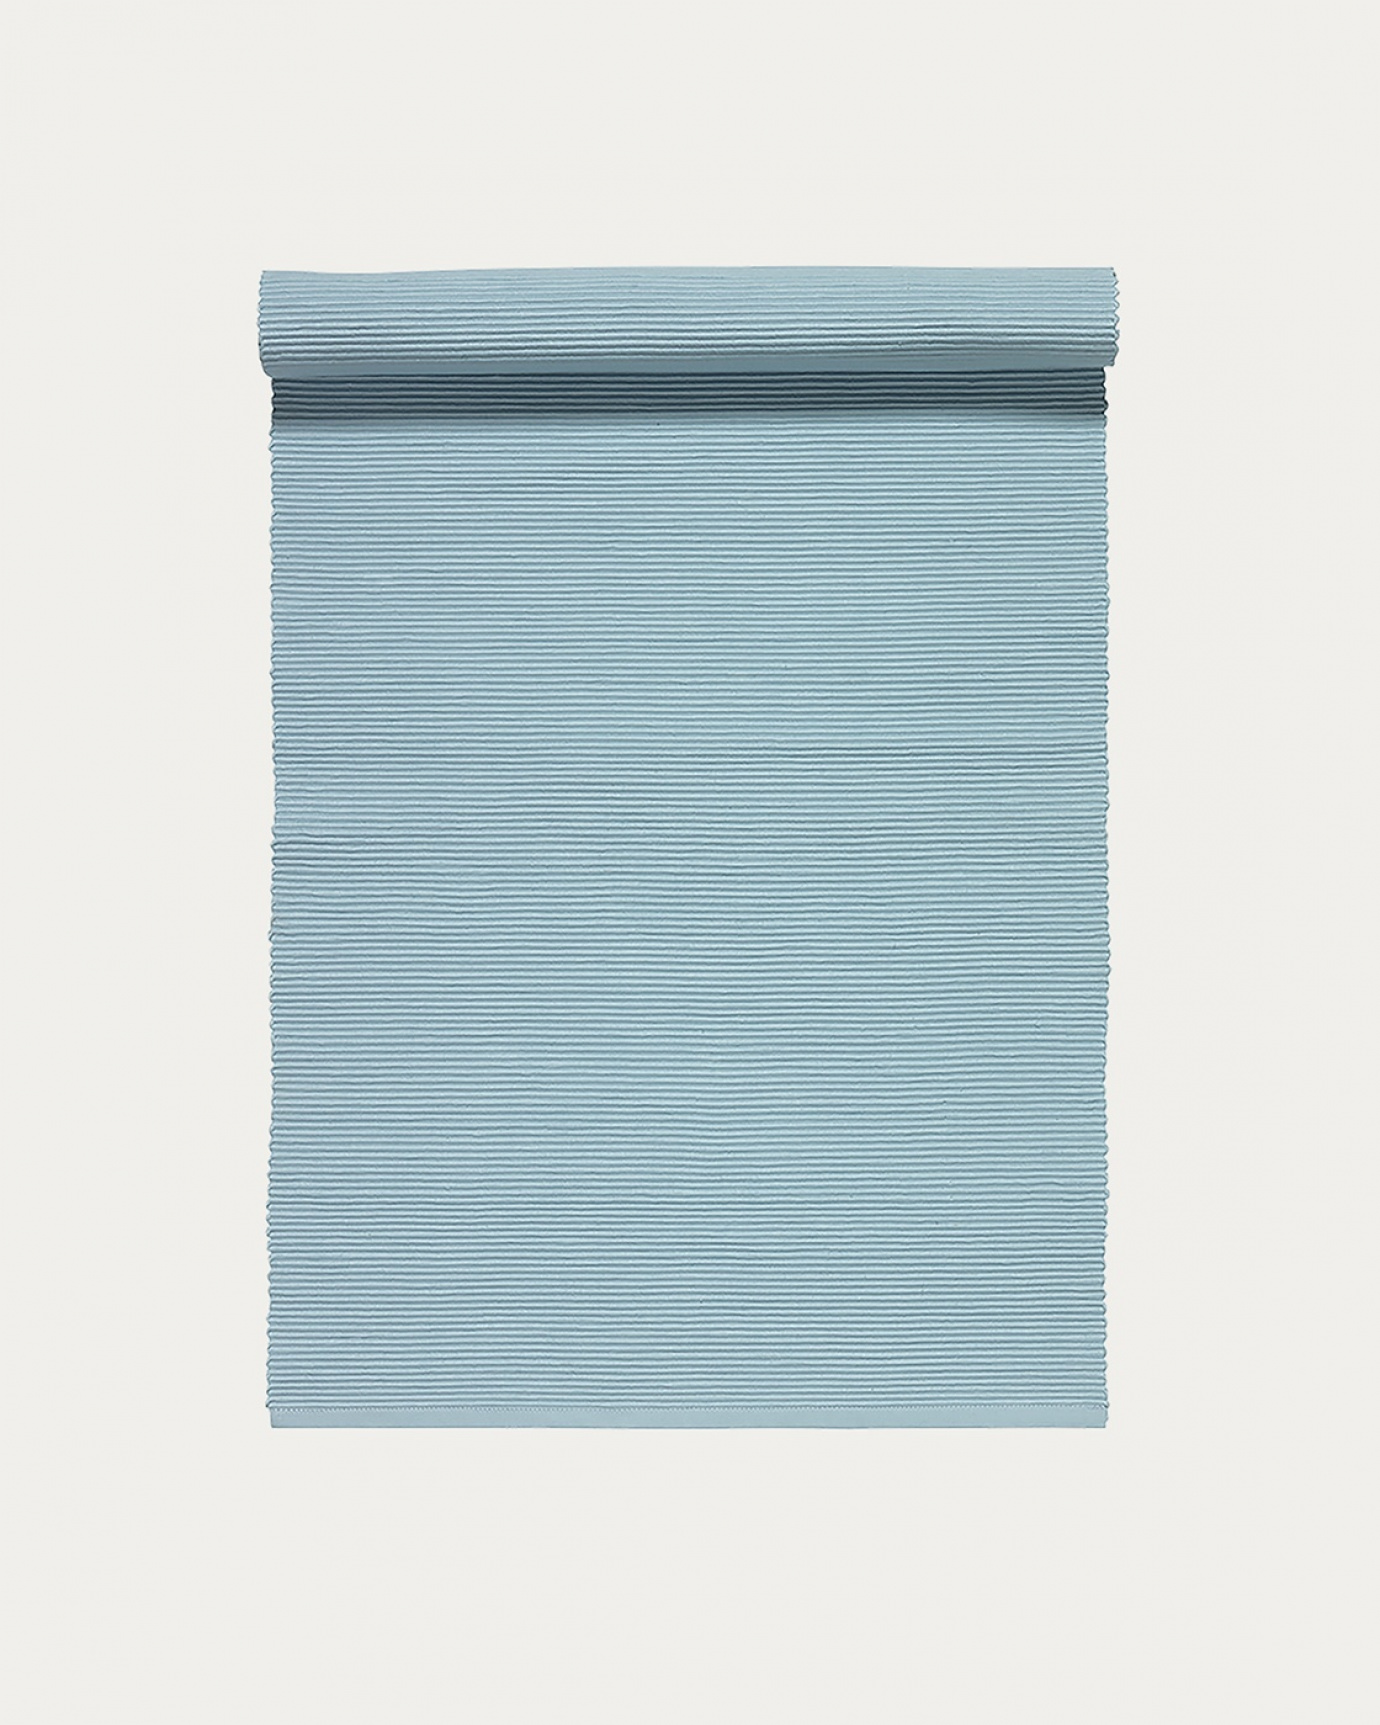 Produktbild helles himmelblau UNI Tischläufer aus weicher Baumwolle in Rippenqualität von LINUM DESIGN. Größe 45x150 cm.